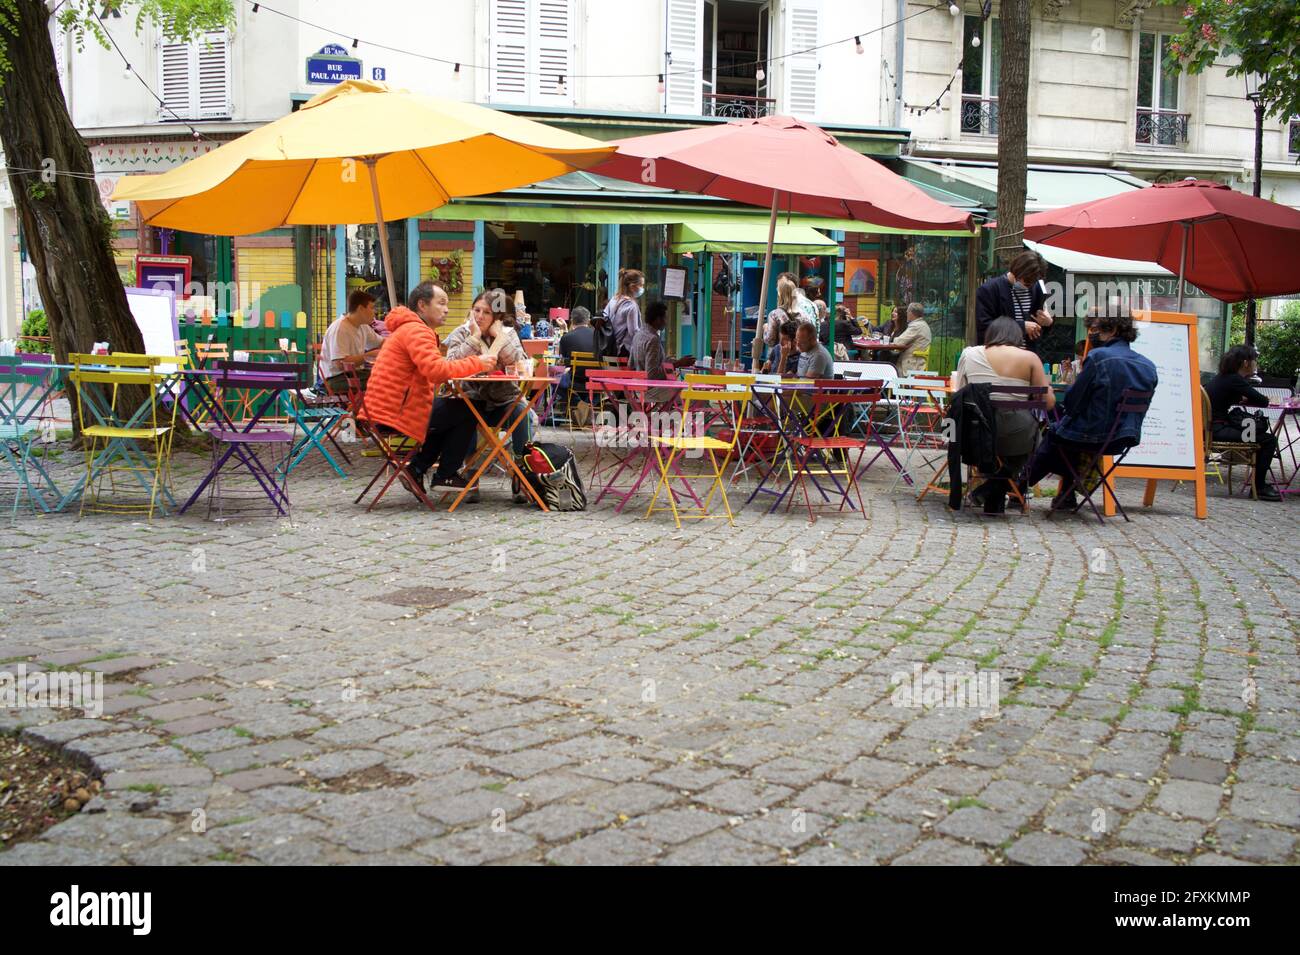 Les clients peuvent prendre un verre sur une terrasse de café colorée à Montmartre, l'une des nombreuses terrasses de cafés parisiens désormais ouvertes au public après que Covid-19 a été assouplie - l'été en pente douce, 8 rue Paul Albert, 75018, Paris, France. Mai 2021. Banque D'Images